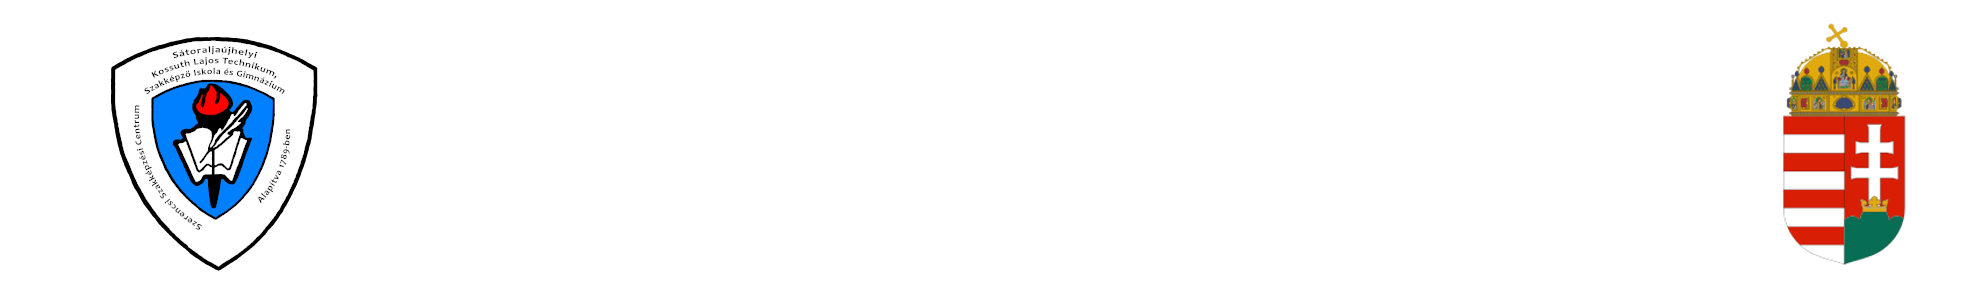 SZSZC Sátoraljaújhelyi Kossuth Lajos Technikum, Szakképző Iskola és Gimnázium